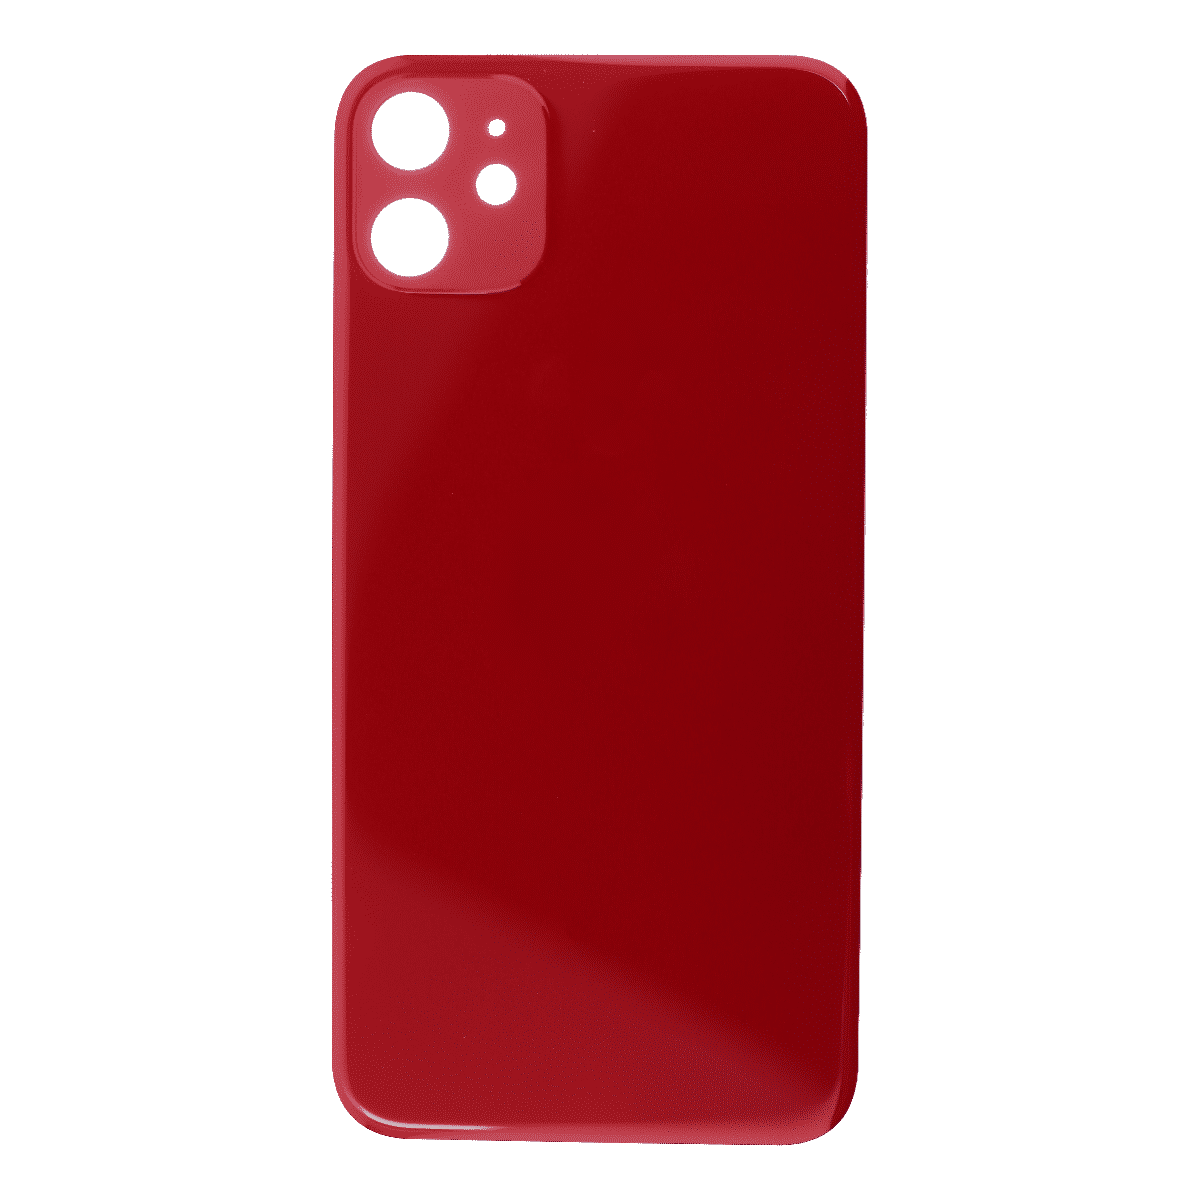 Bagsideglas til iPhone 11 – Rød